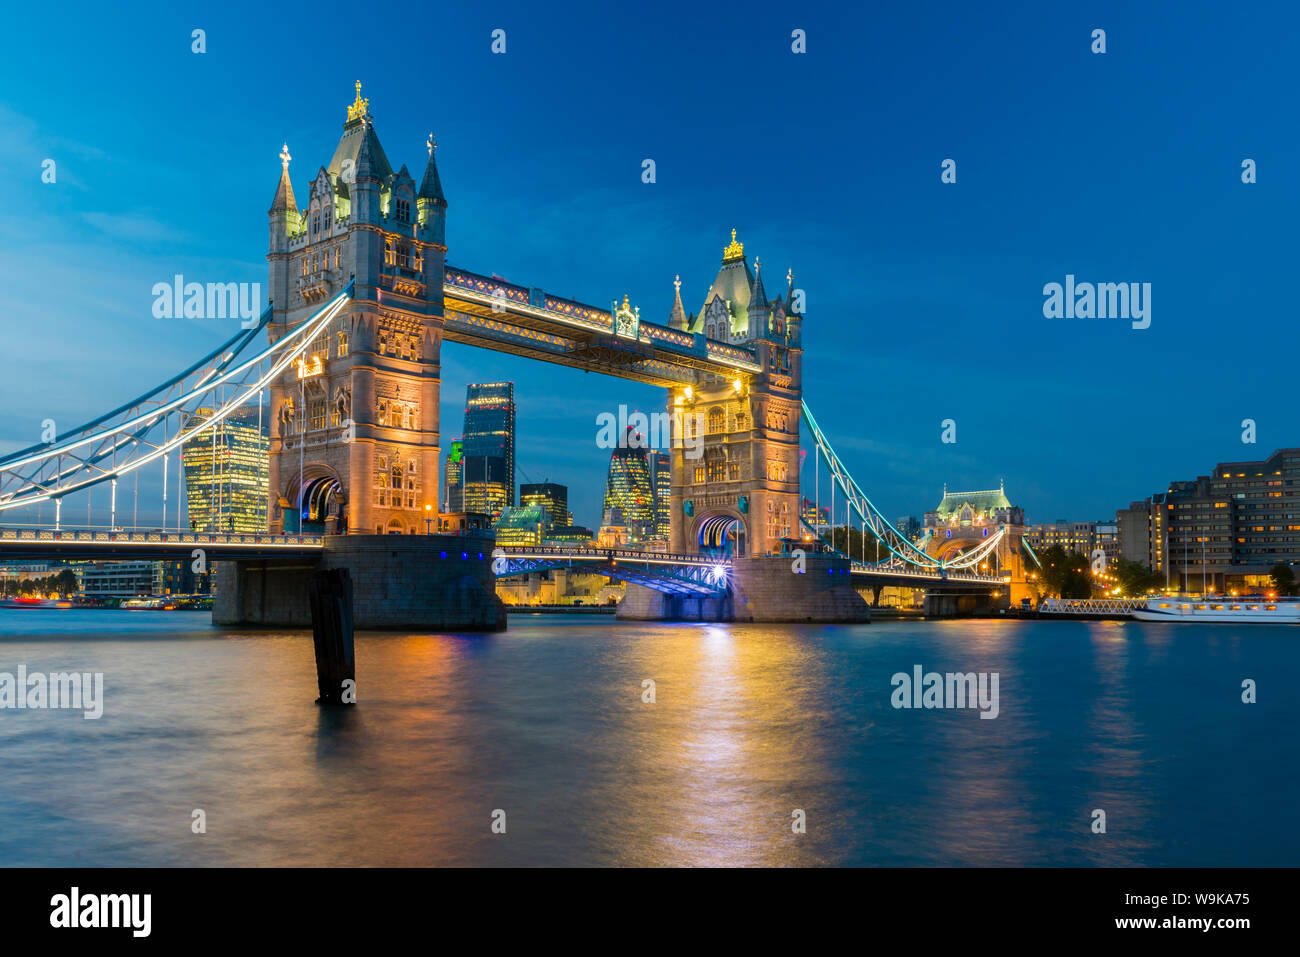 Tower Bridge sur la rivière Thames, la ville de ville de Londres y compris Cheesegrater et gratte-ciel Gherkin, Londres, Angleterre, Royaume-Uni, Europe Banque D'Images